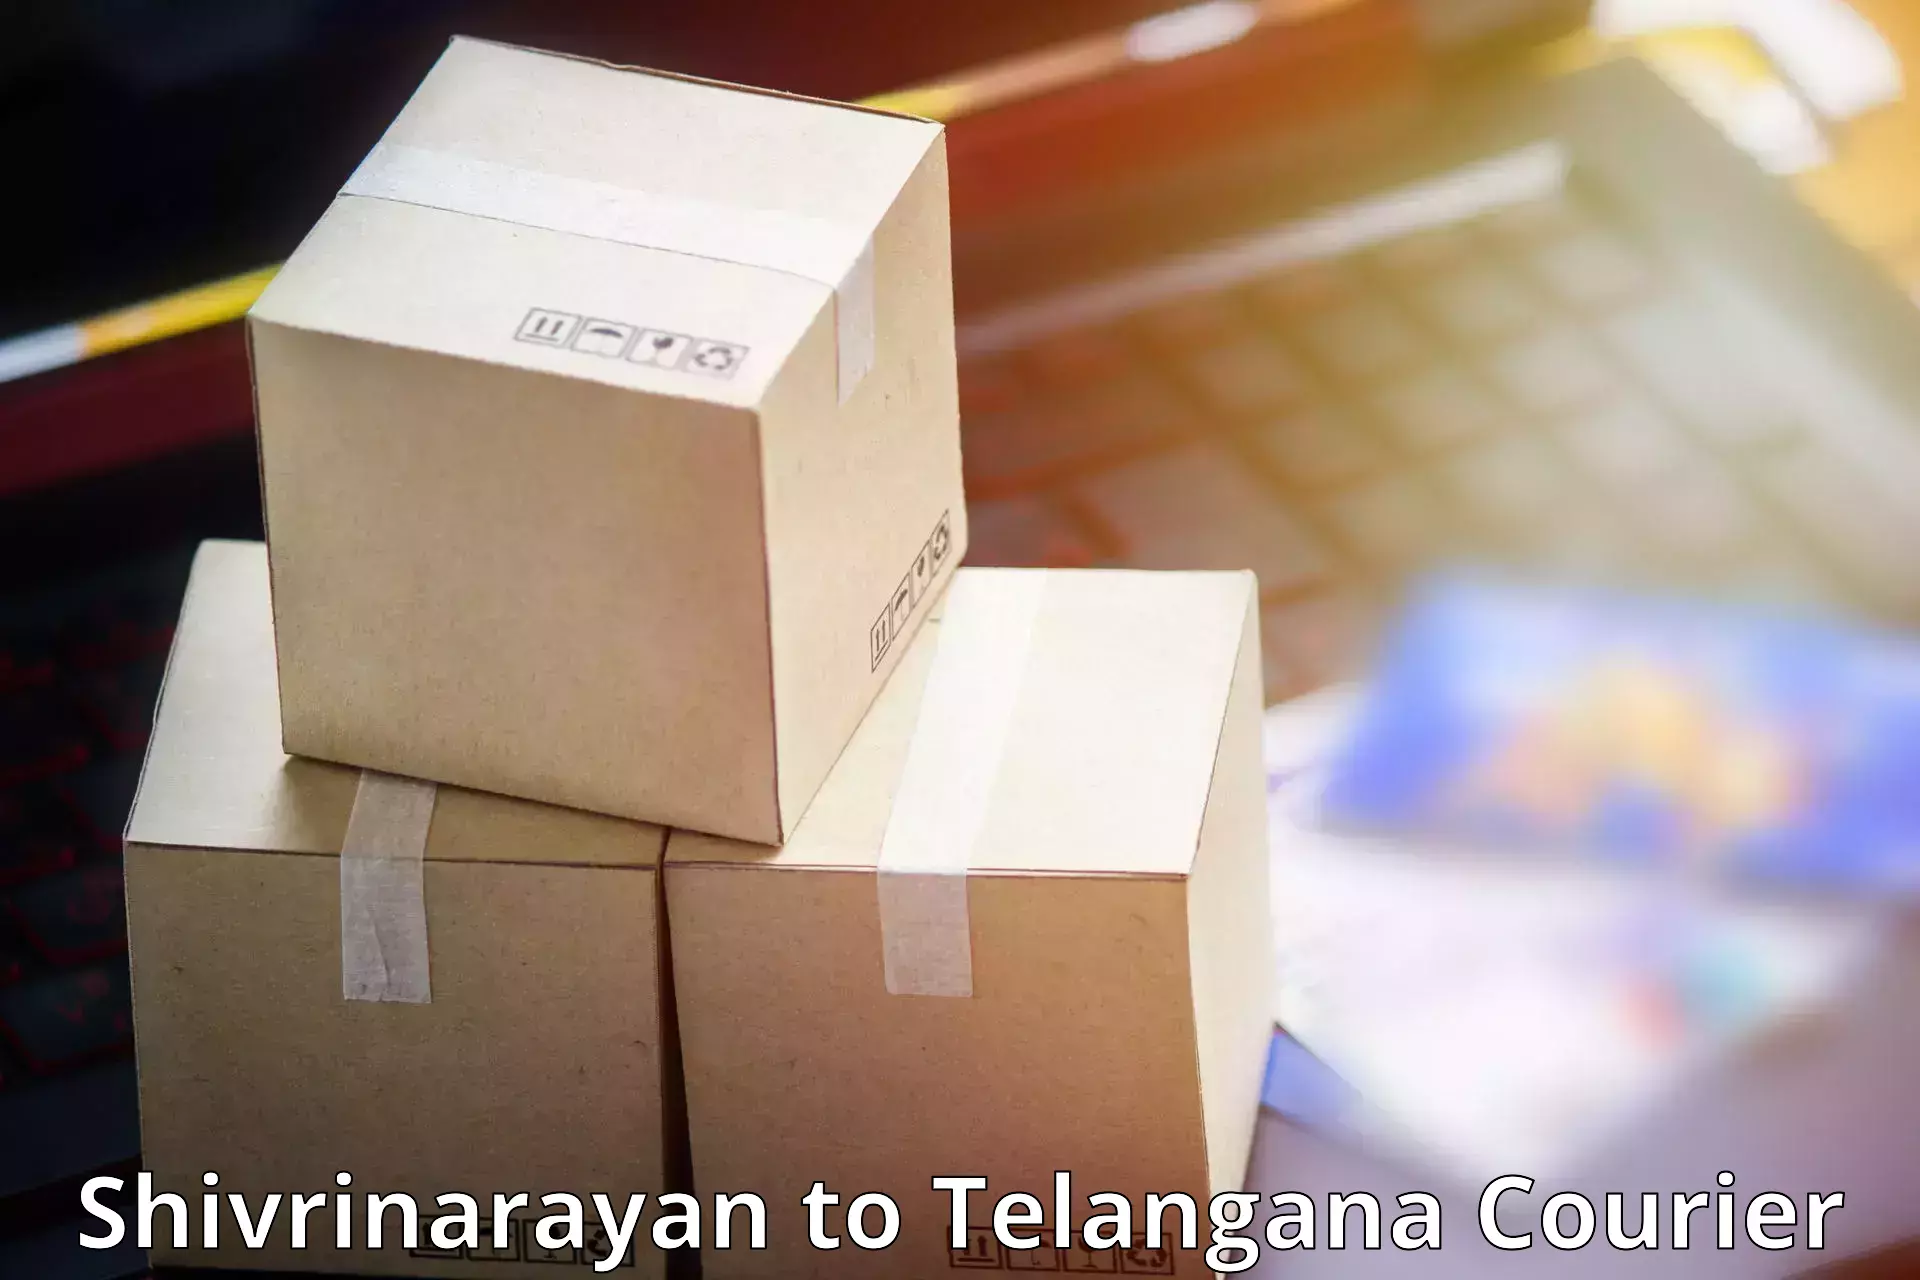 Parcel delivery automation Shivrinarayan to Chevella